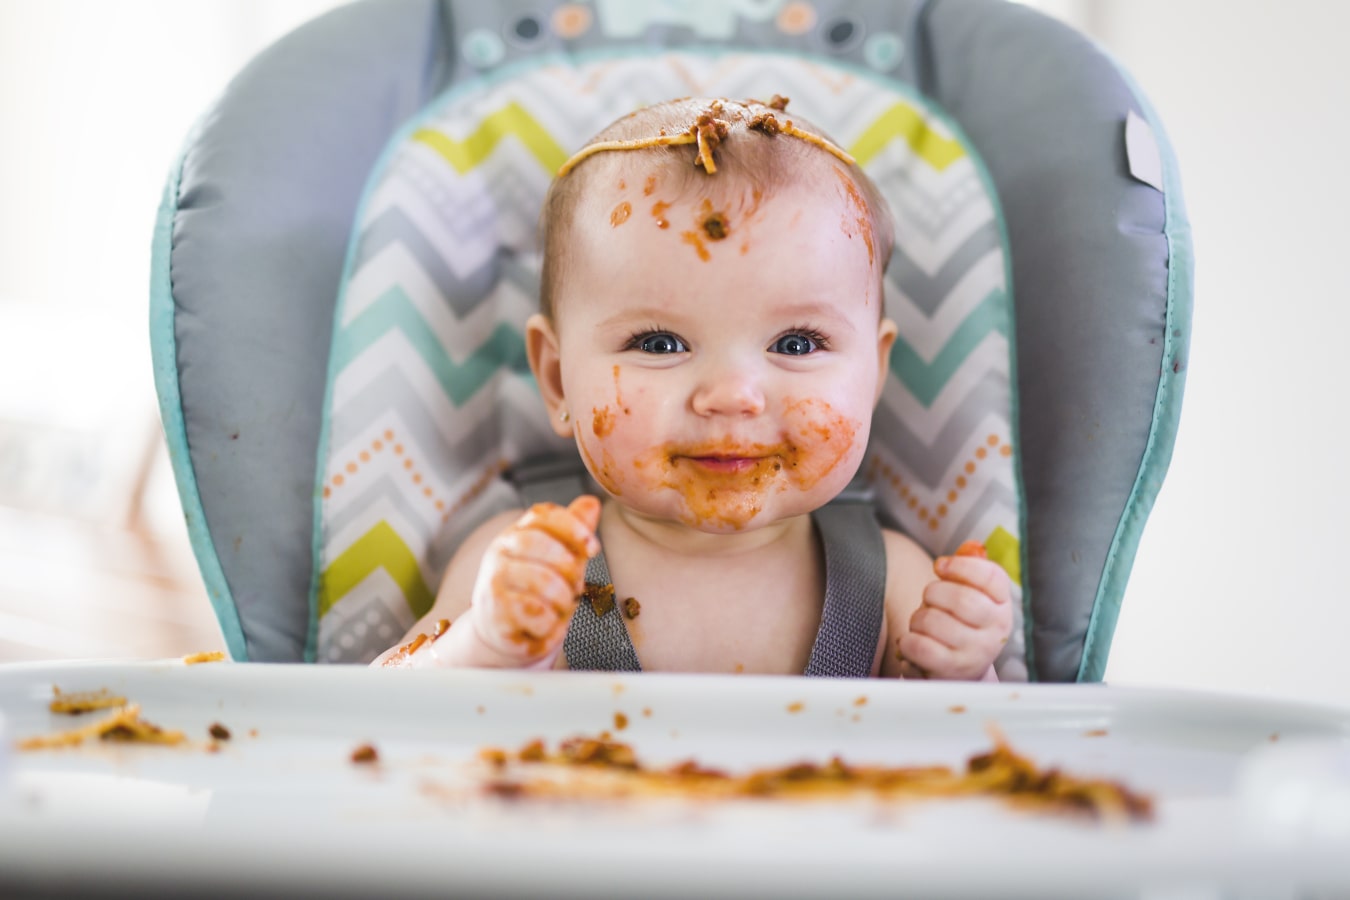 Ein Baby, schmutzig von Spaghetti, sitzt angeschnallt in einem Essensstuhl. Er ist glücklich und lächelt, er hat reichlich Futter dabei und auf dem Tablett.